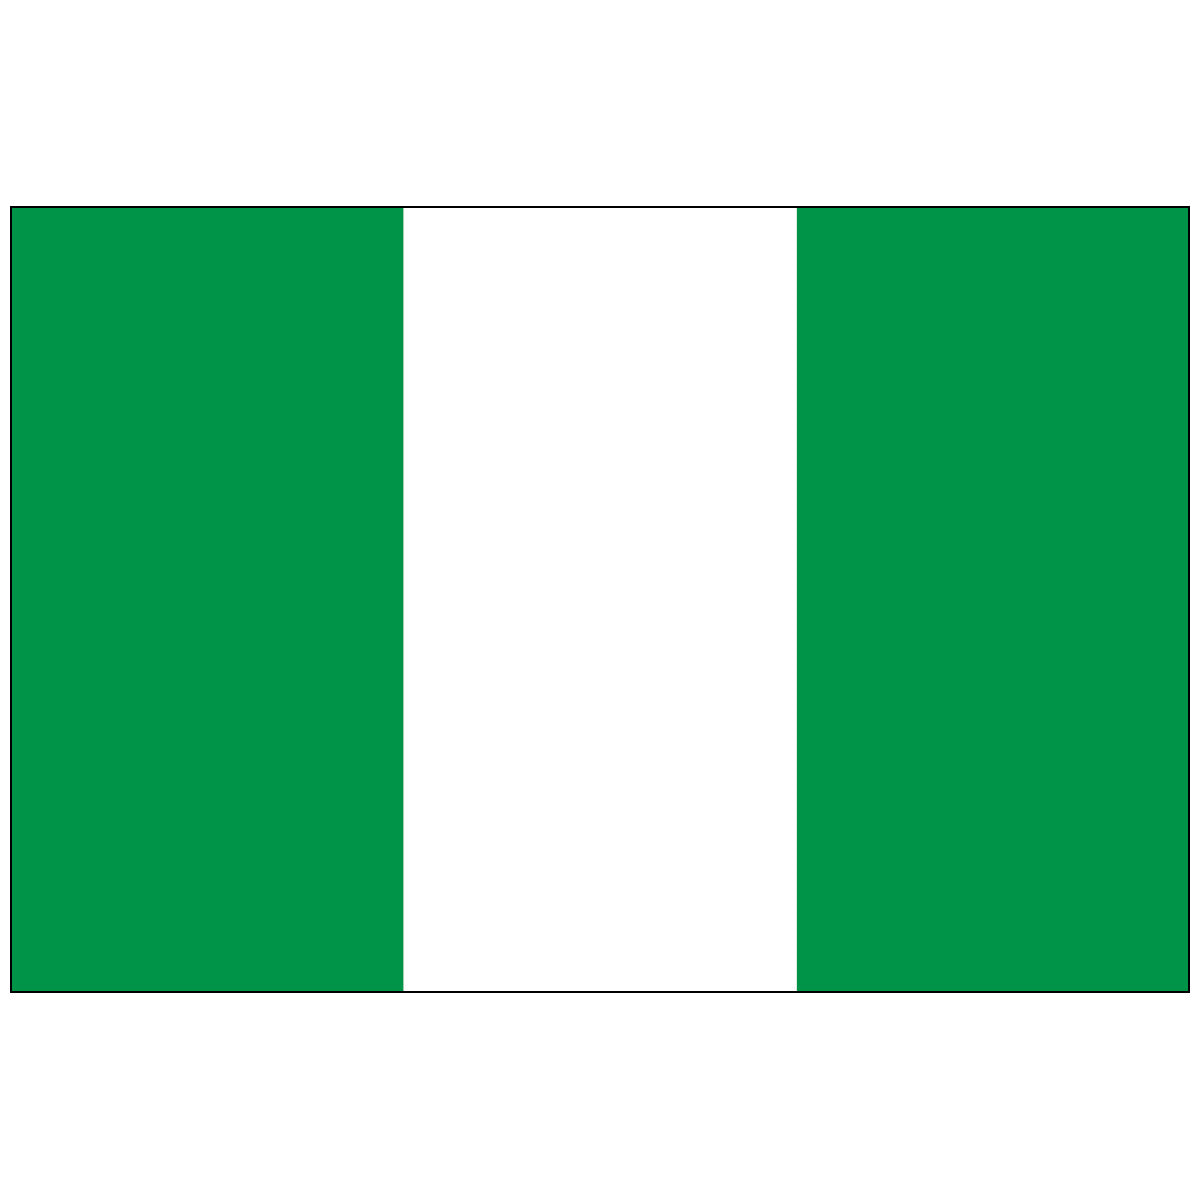 Nigeria - World Flag